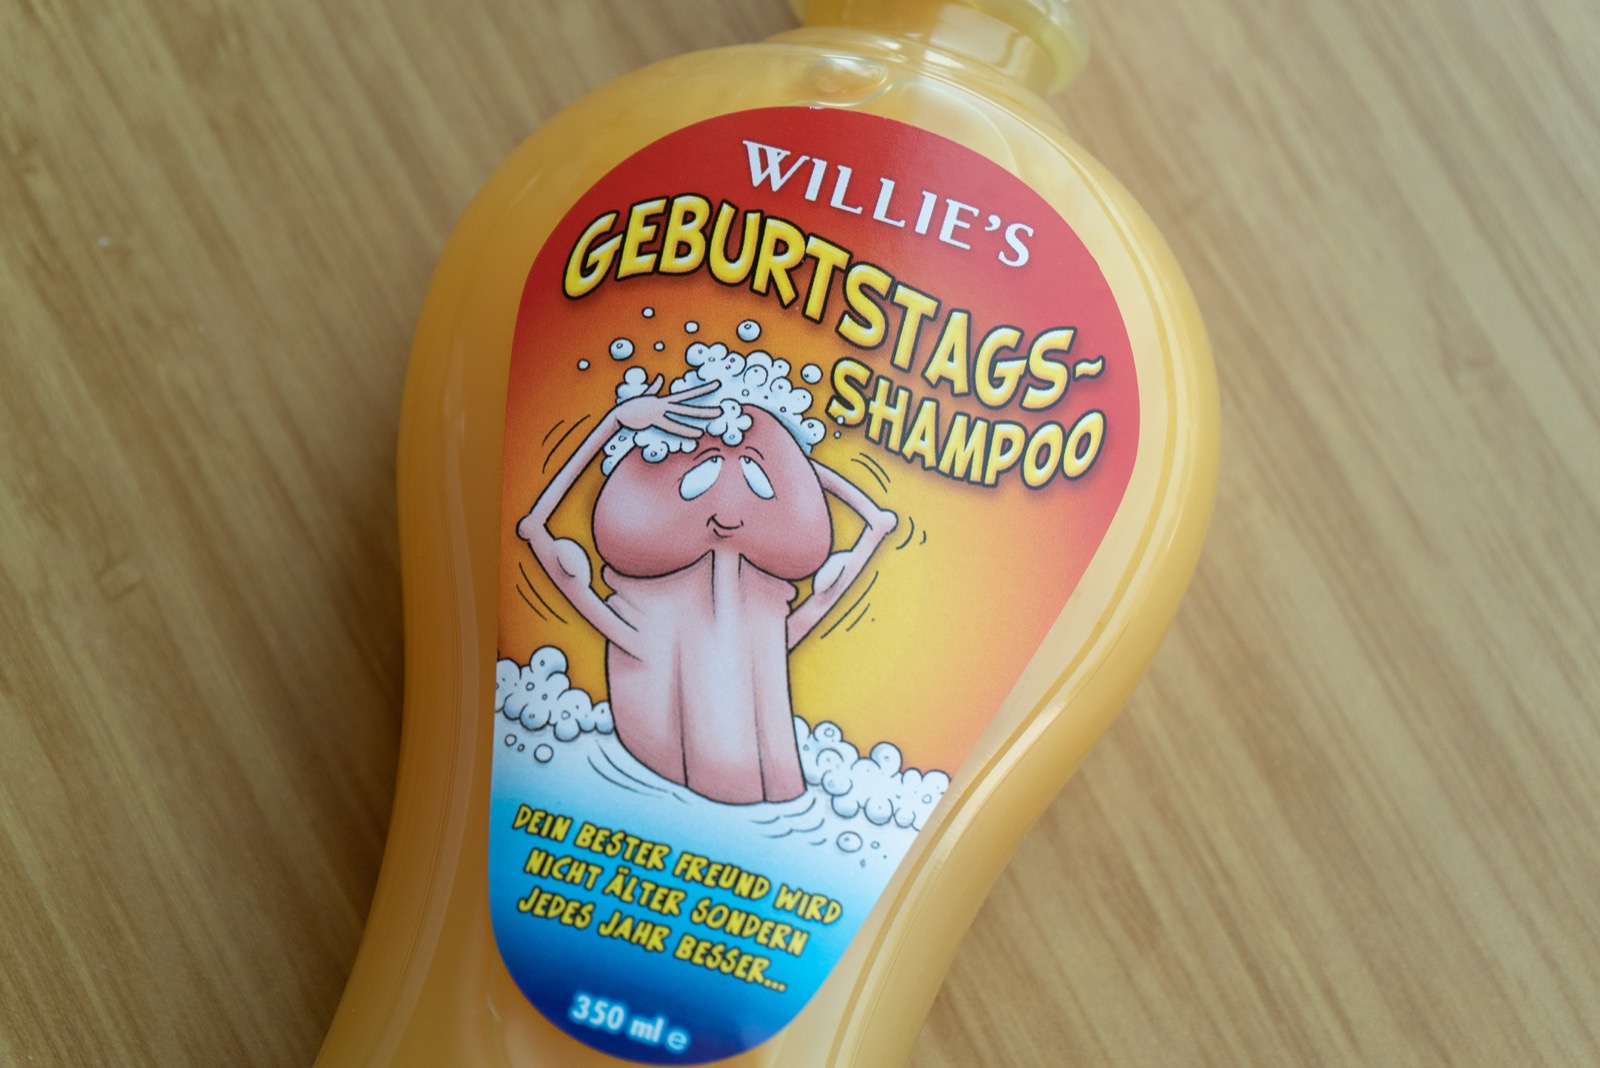 男性用品 | 德国 Geburtstags Shampoo 男士清洗液